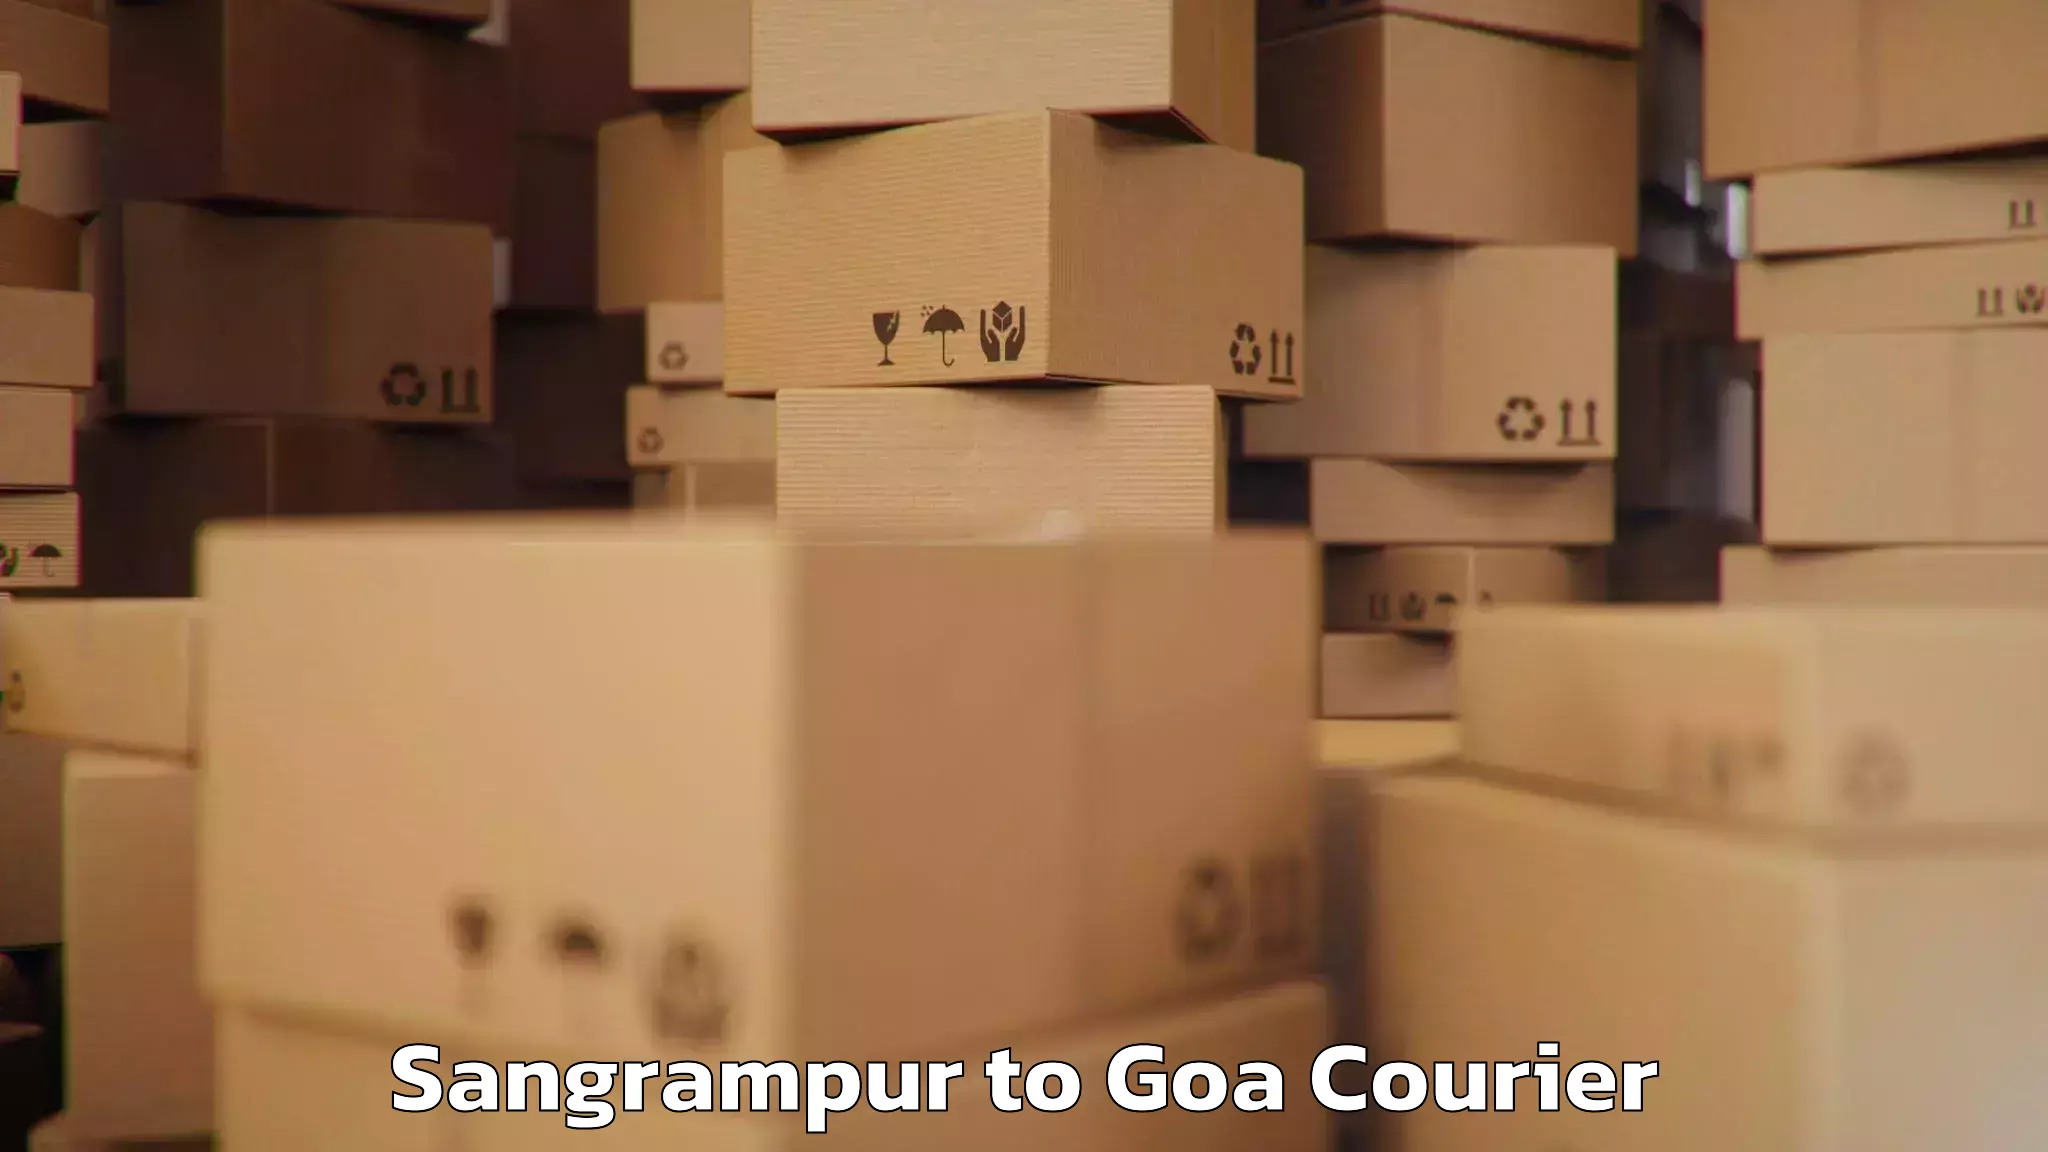 Same day baggage transport Sangrampur to Goa